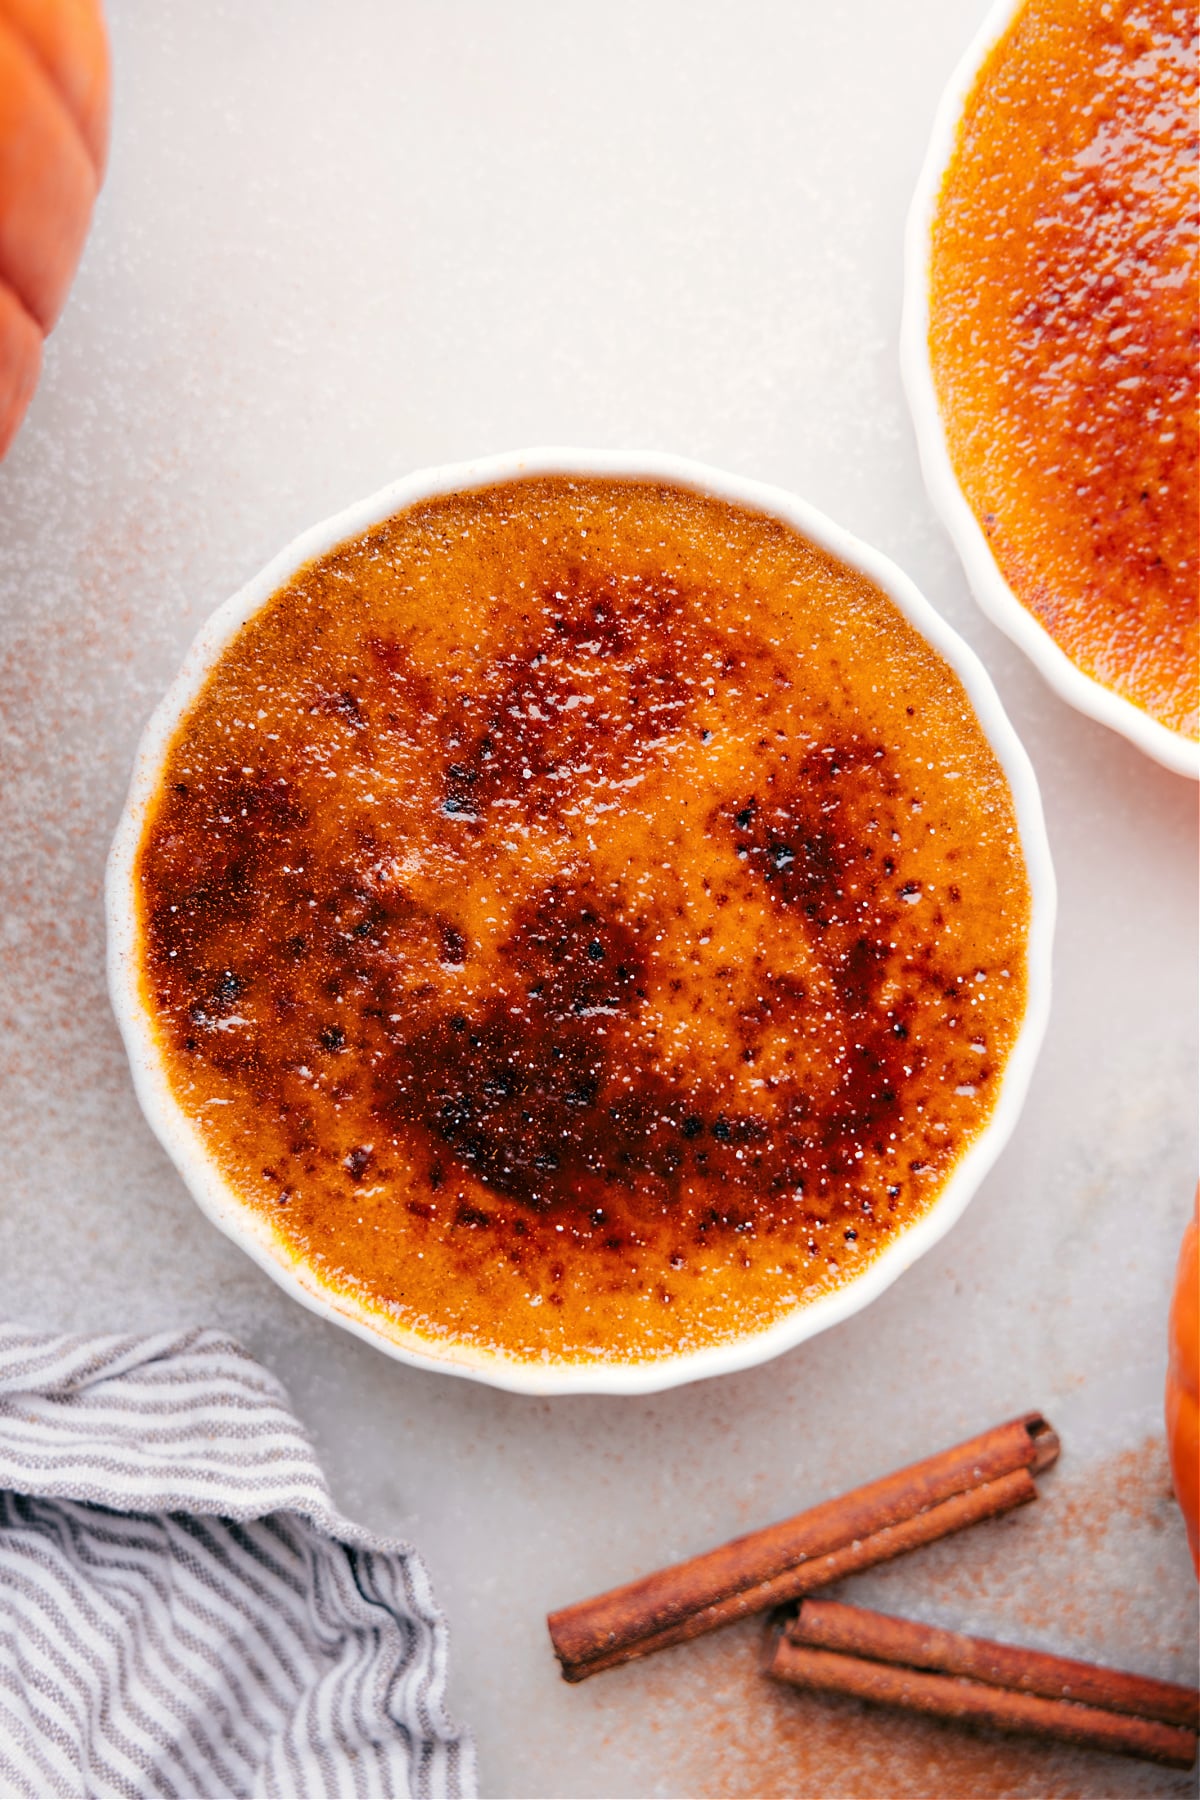 Golden caramelized sugar crust atop creamy Pumpkin Créme Brûleé in a ramekin.